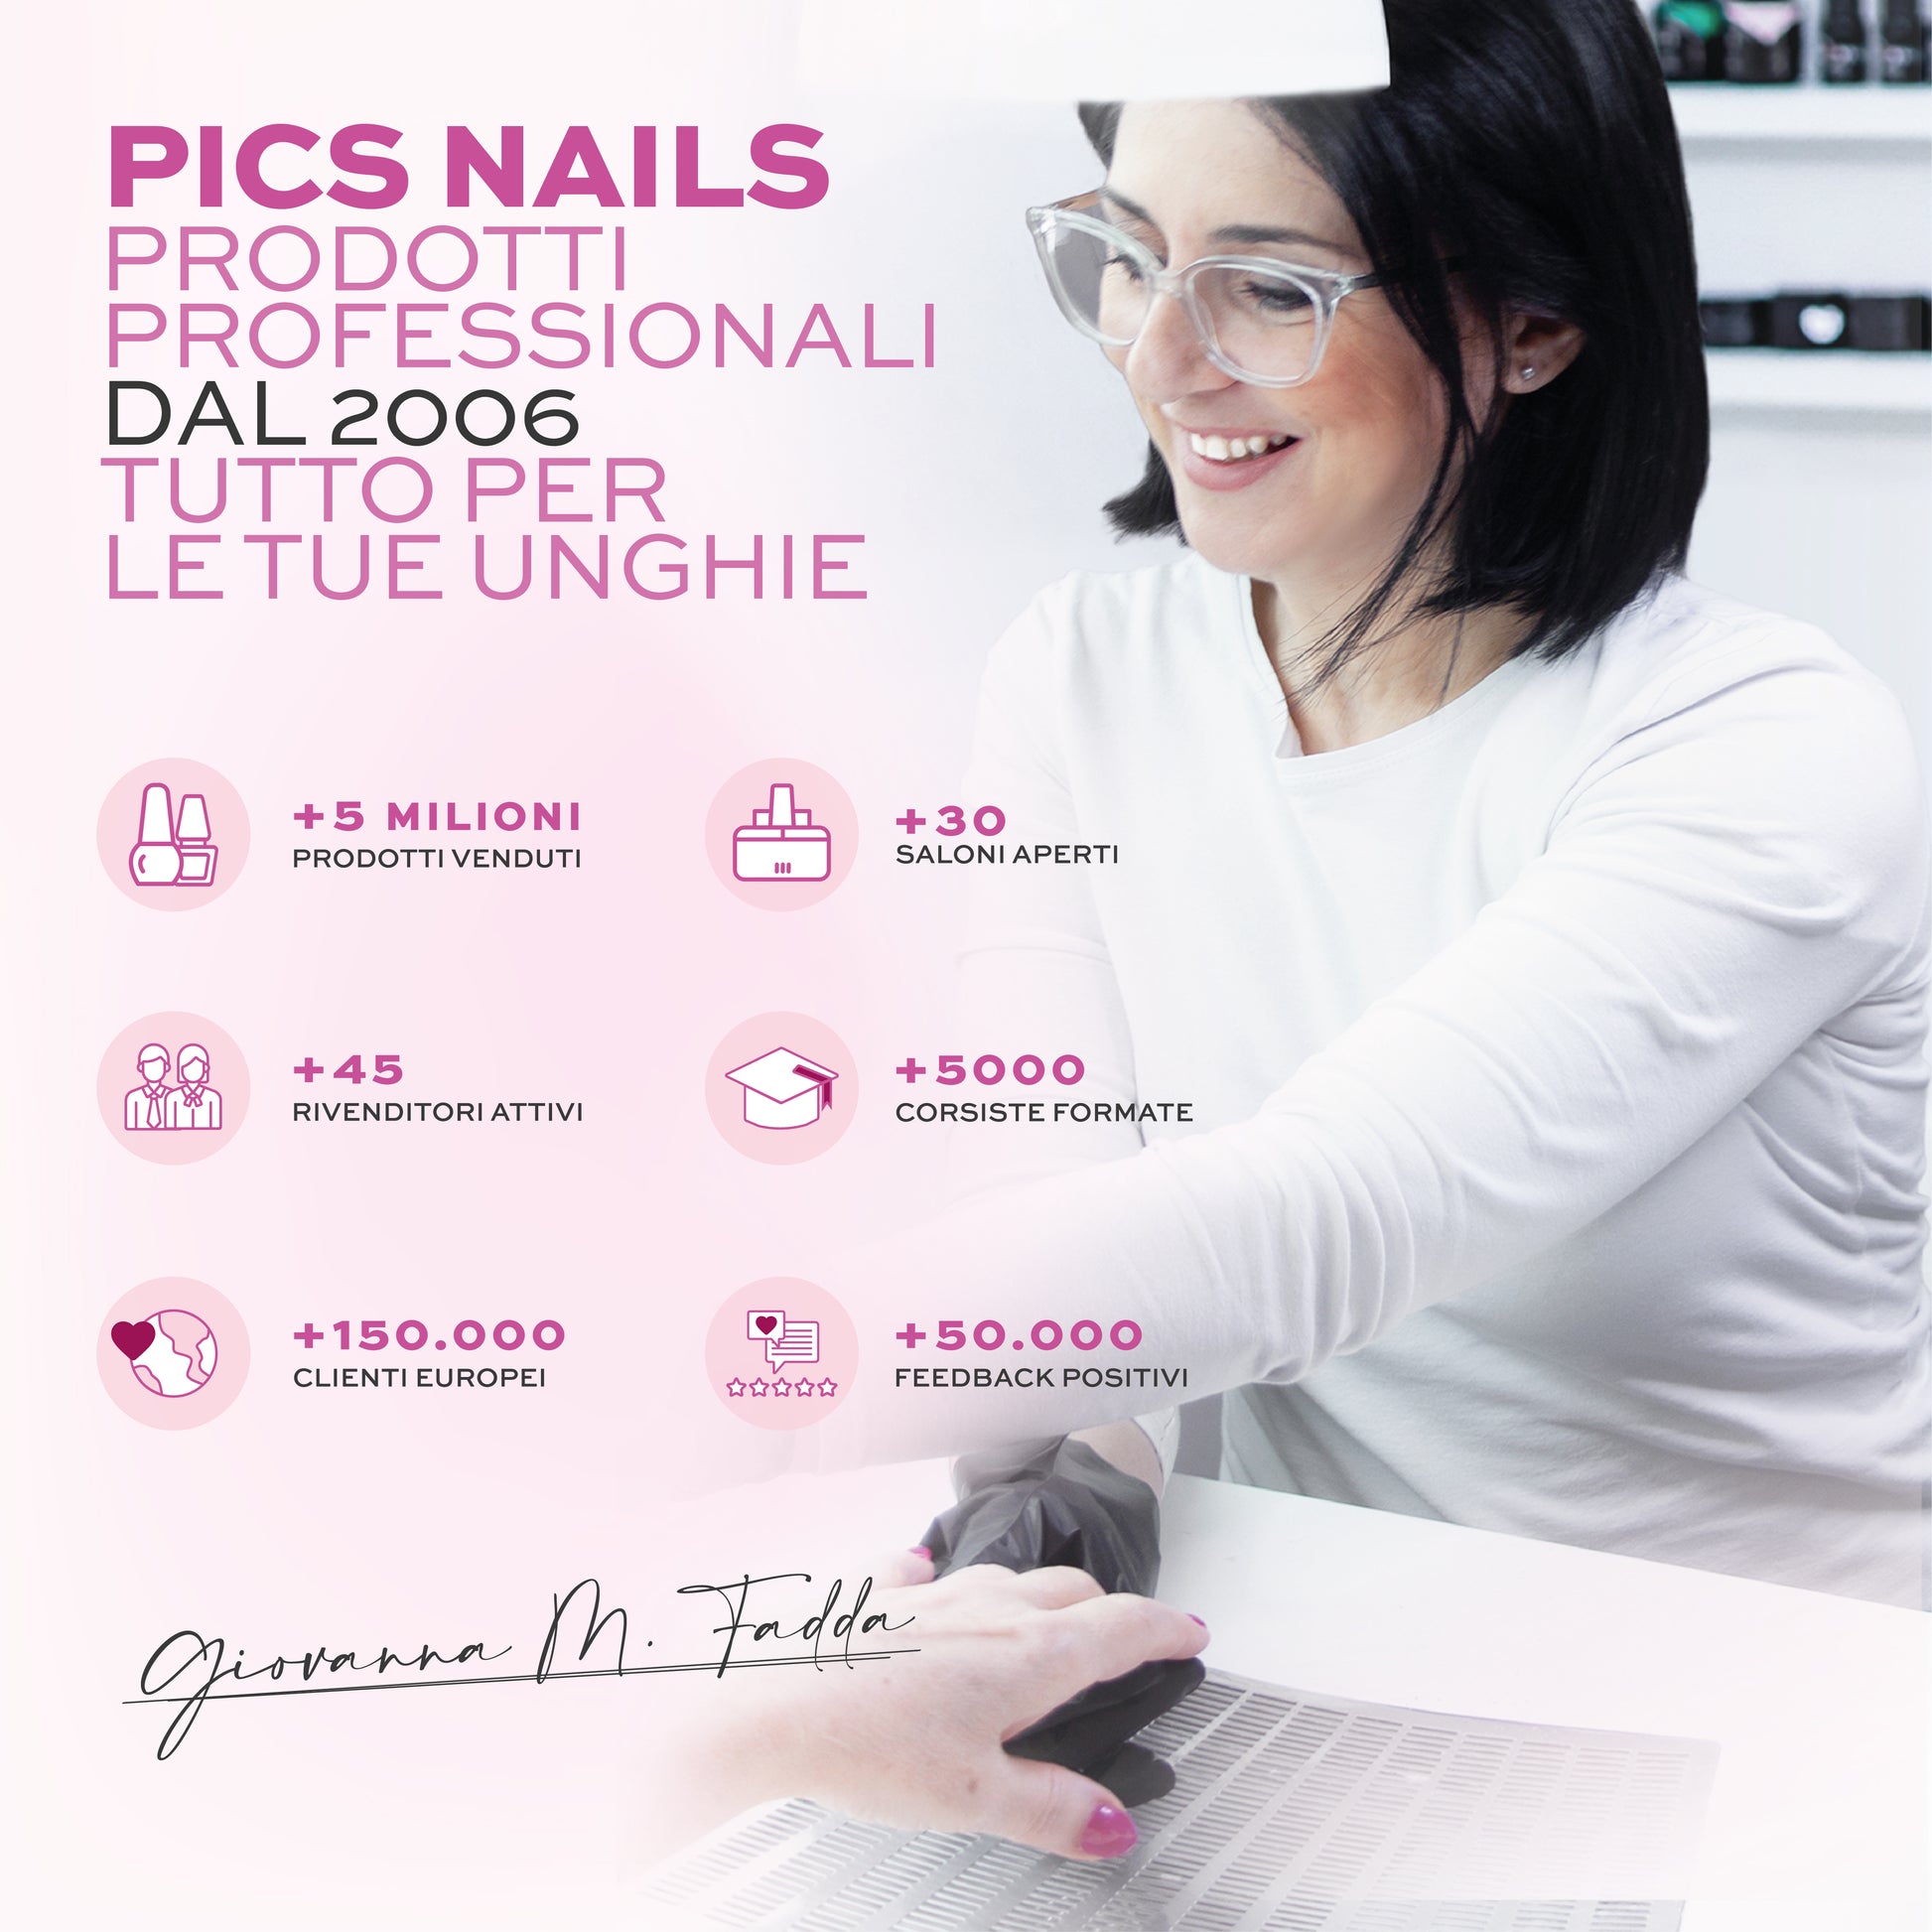 Pics Nails Prodotti Professionali dal 2006